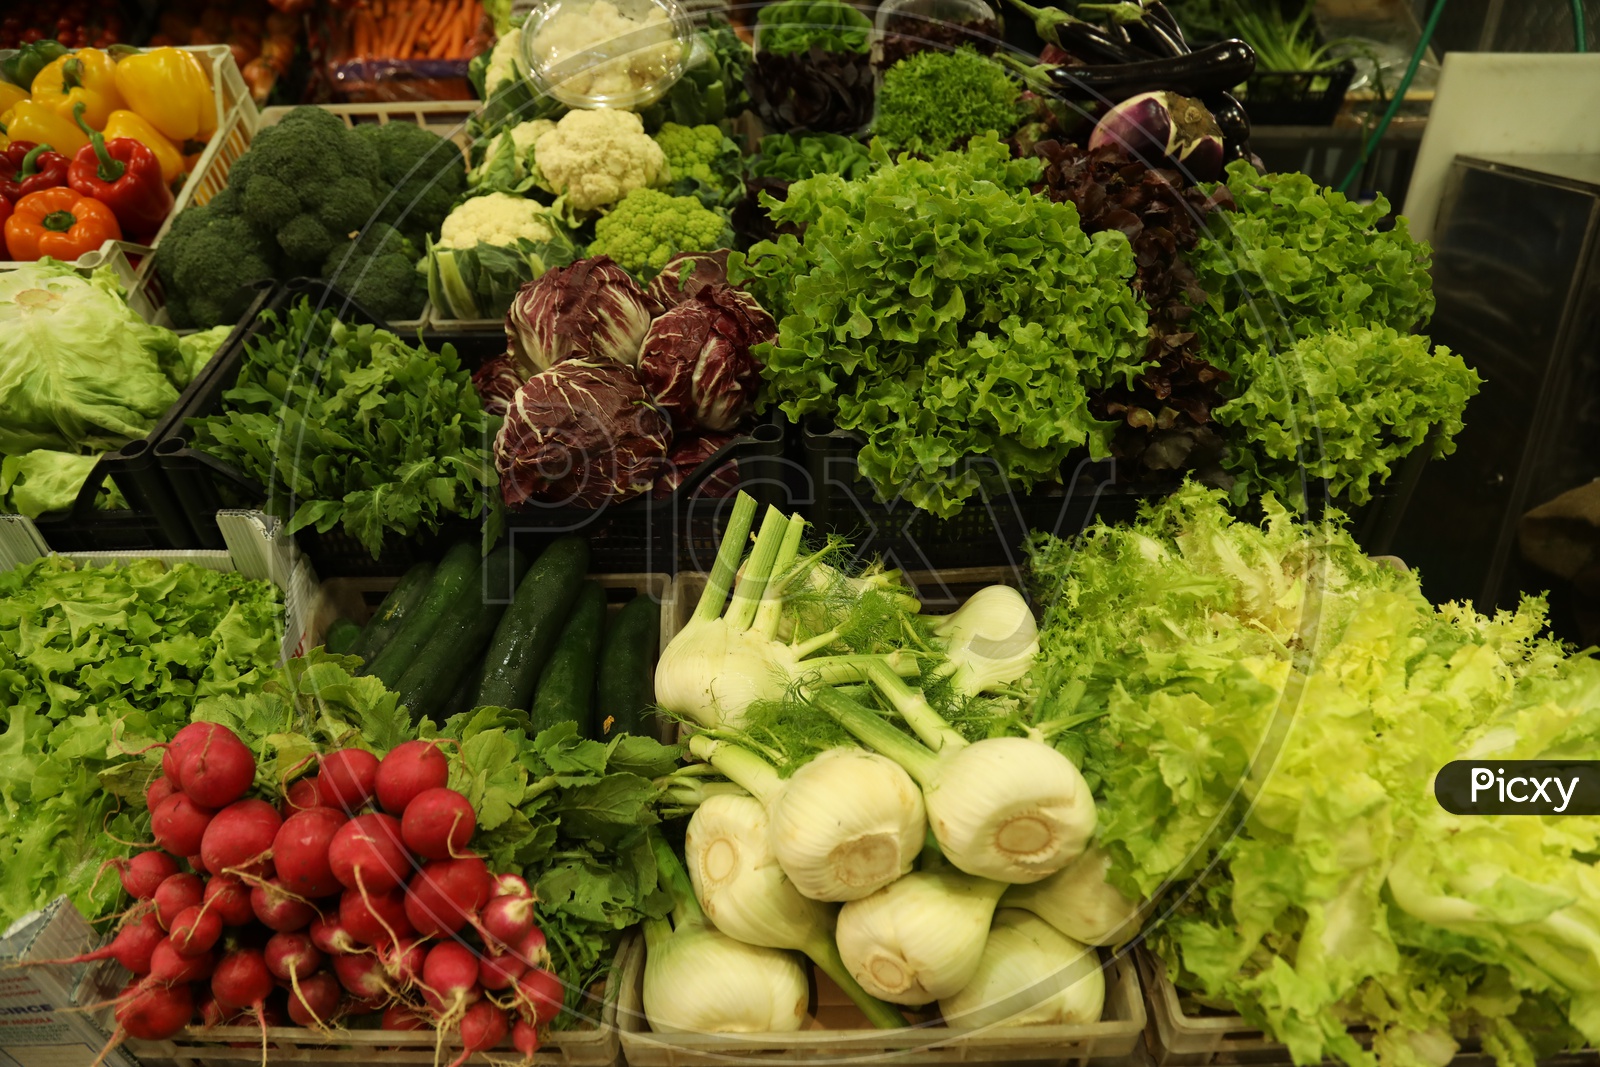 Vegetables in  Baskets In a Supermarket